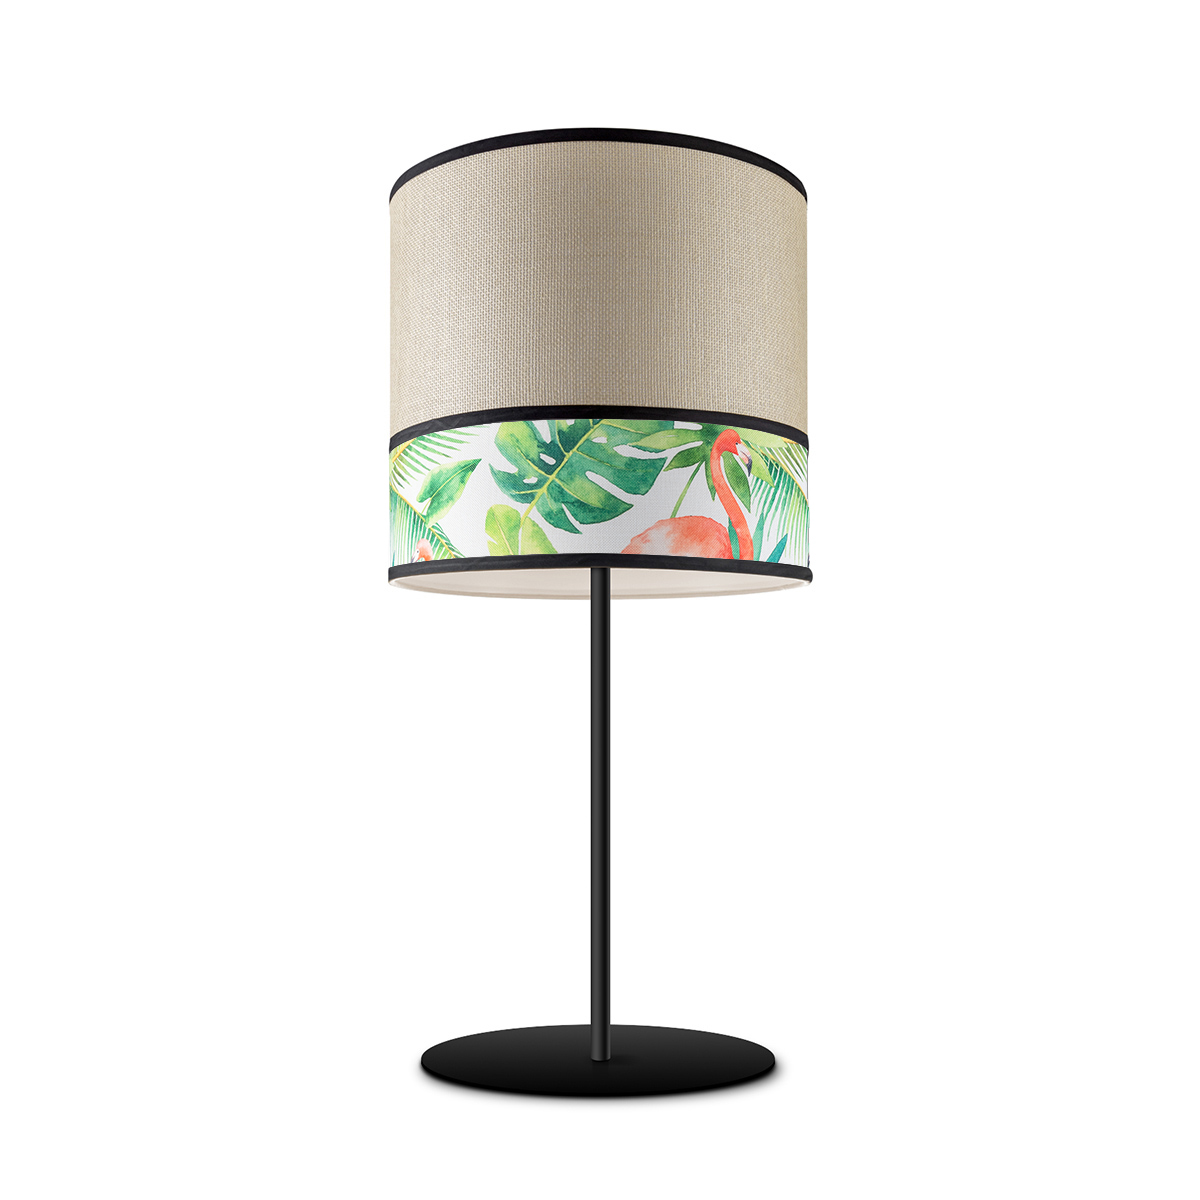 Tangla lighting - TLT7041-25D - Table lamp 1 Light - metal + paper + TC fabric - spring - crane - E27